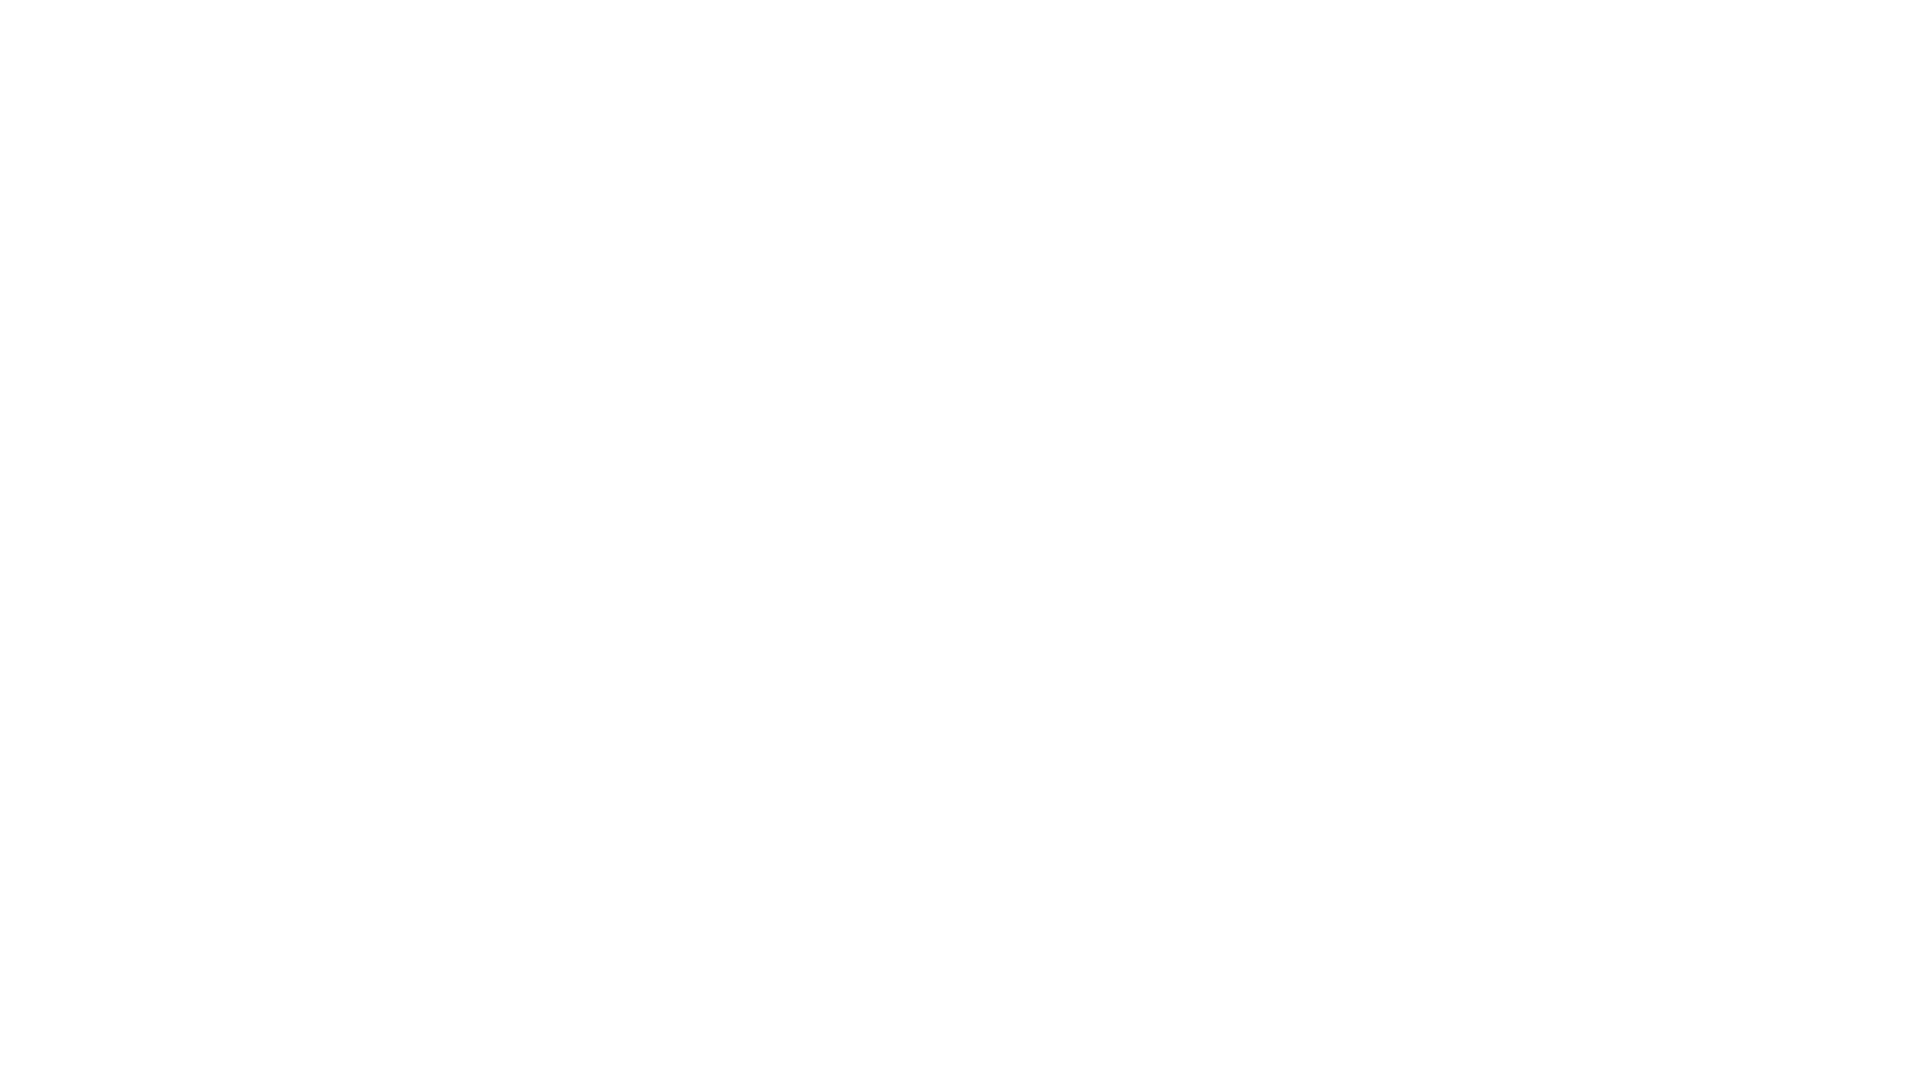 Atlas copco